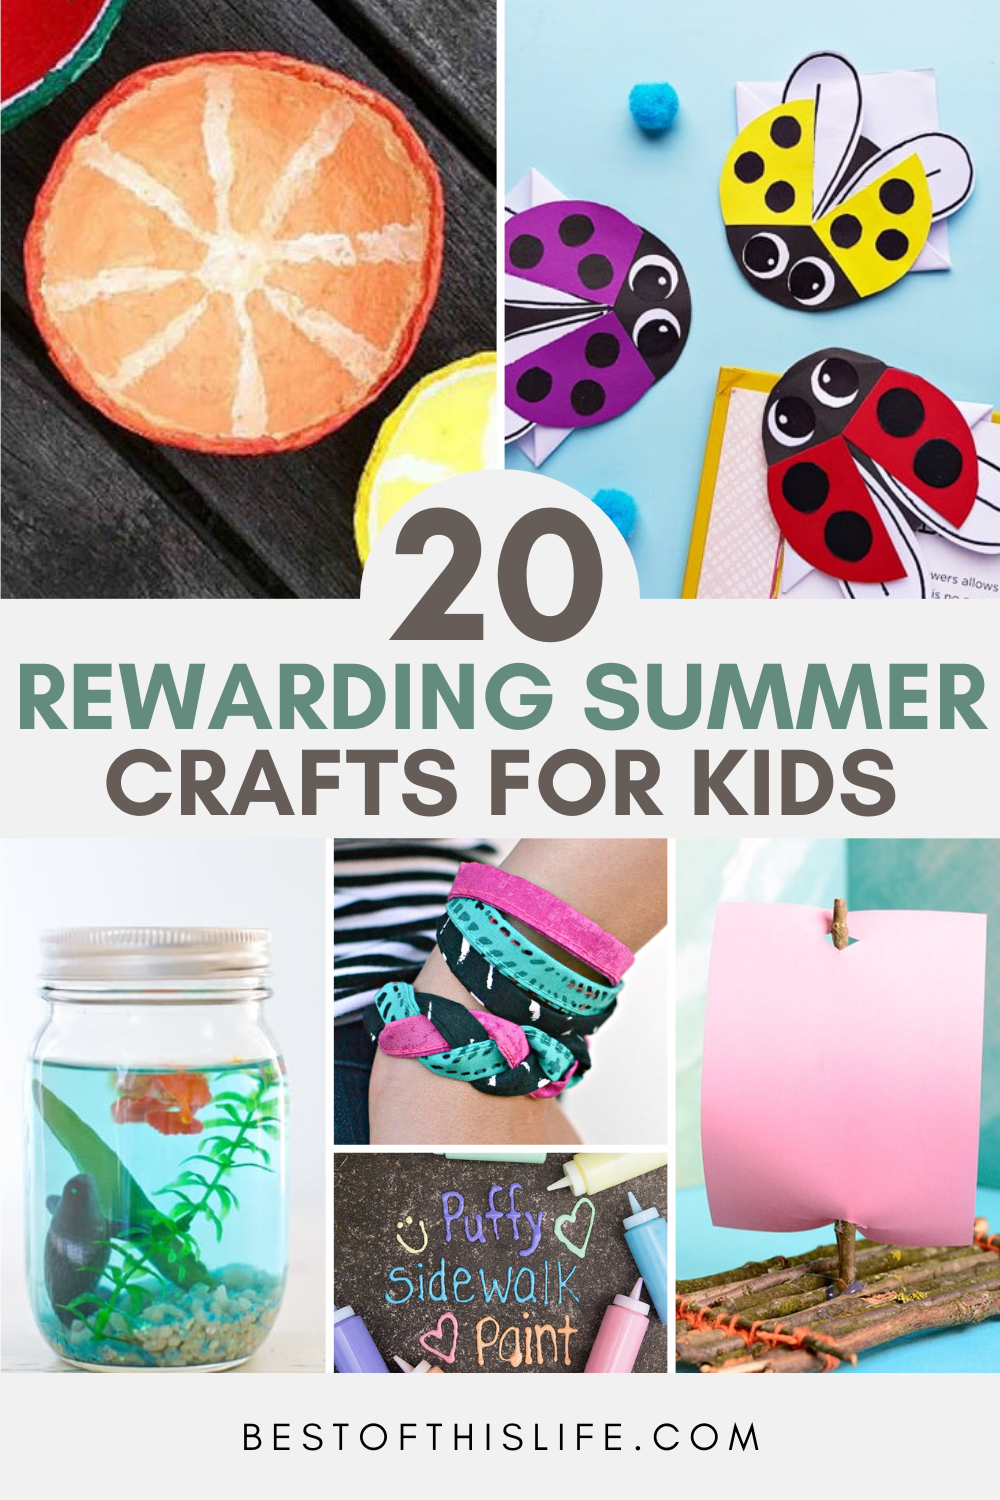 https://www.bestofthislife.com/wp-content/uploads/2021/07/20-Rewarding-Summer-Crafts-for-Kids.png